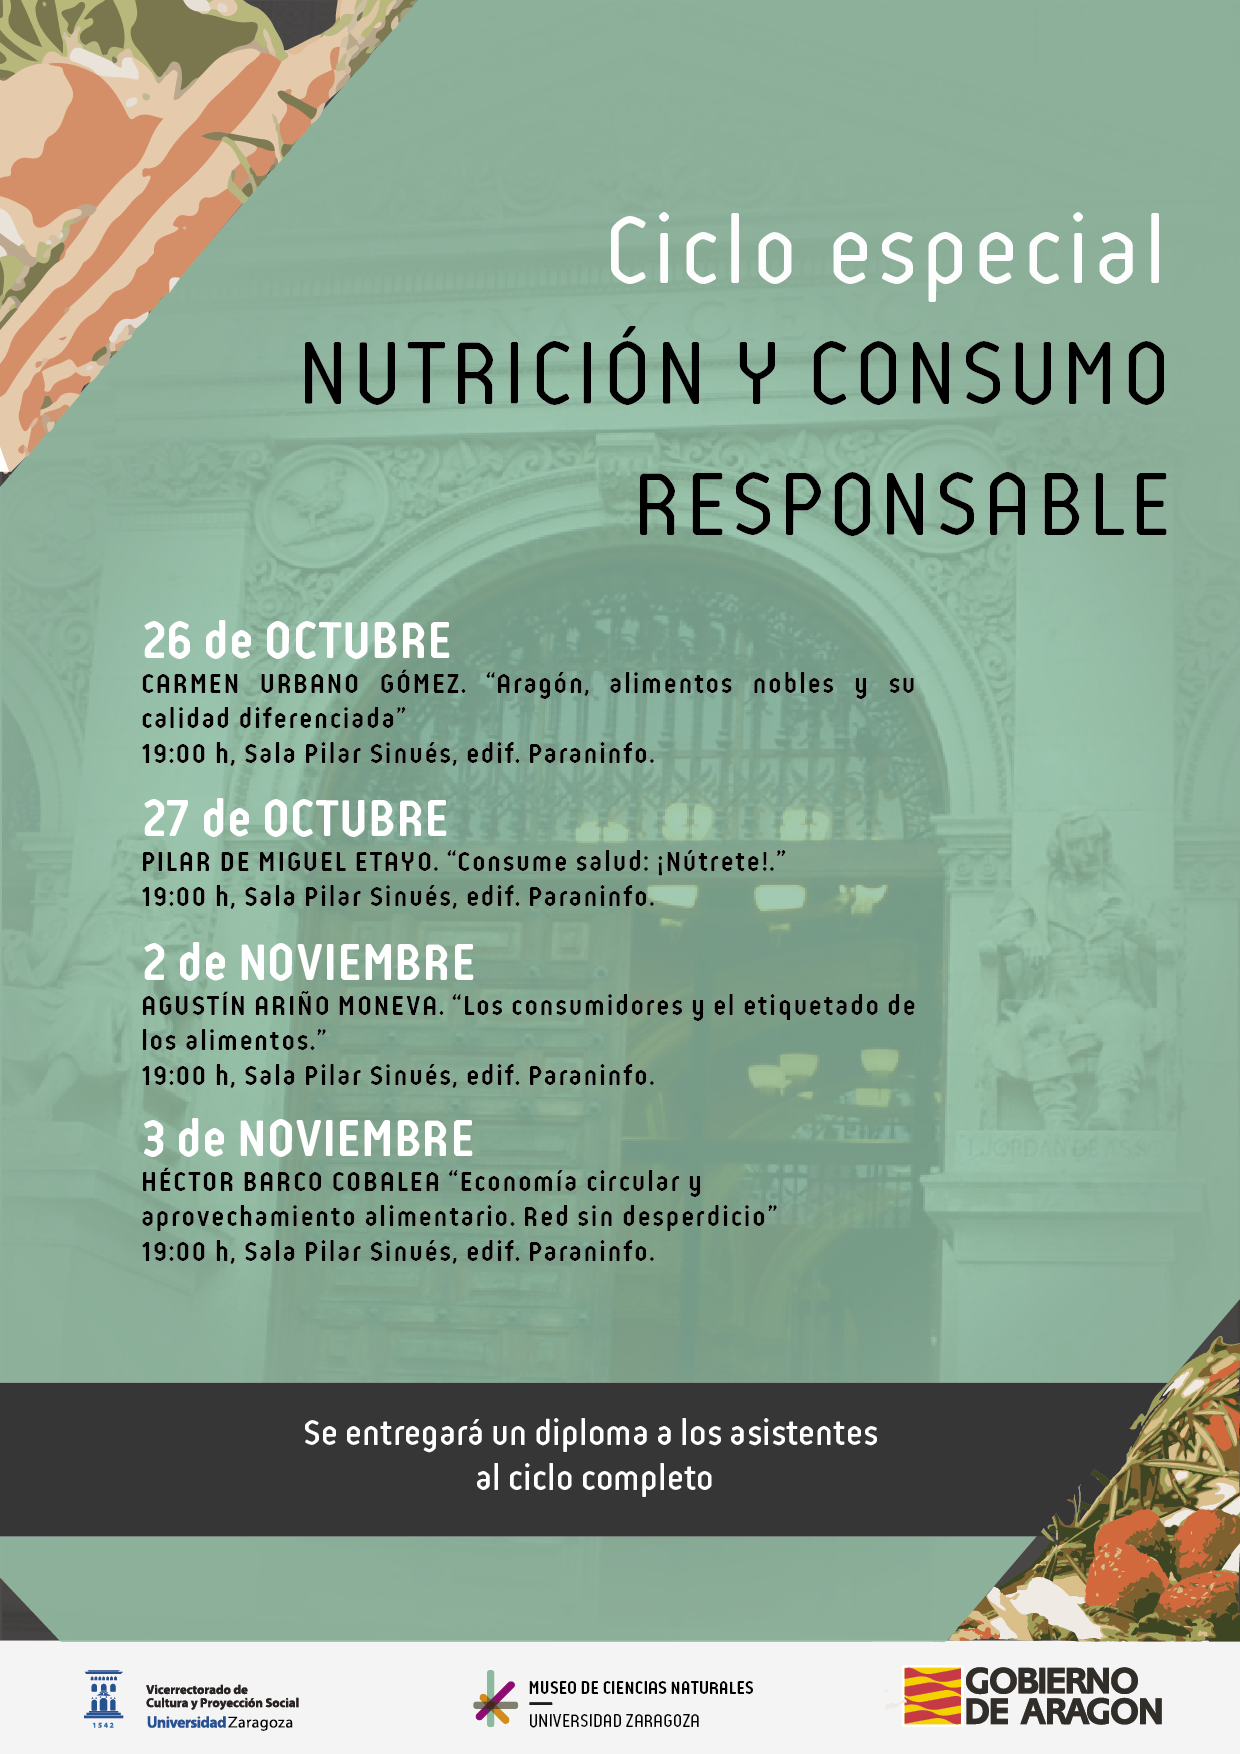 “Nutrición y consumo responsable” el nuevo ciclo de ENCUENTROS EN EL MUSEO